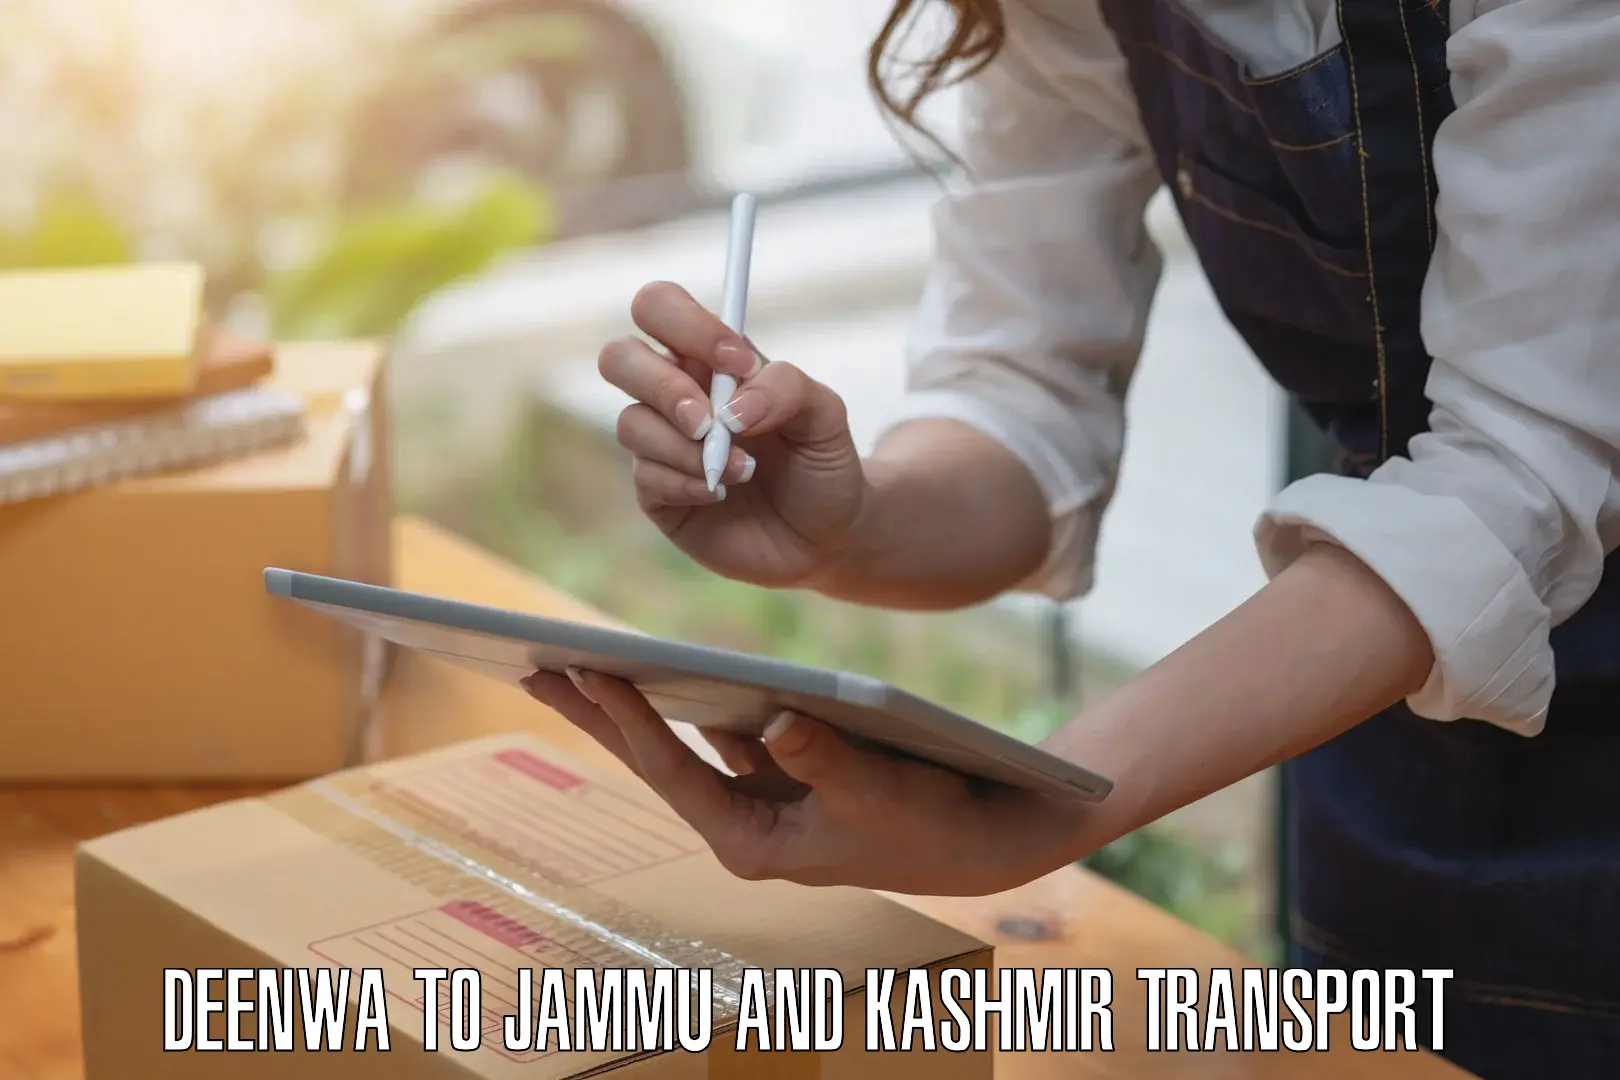 Material transport services Deenwa to Srinagar Kashmir